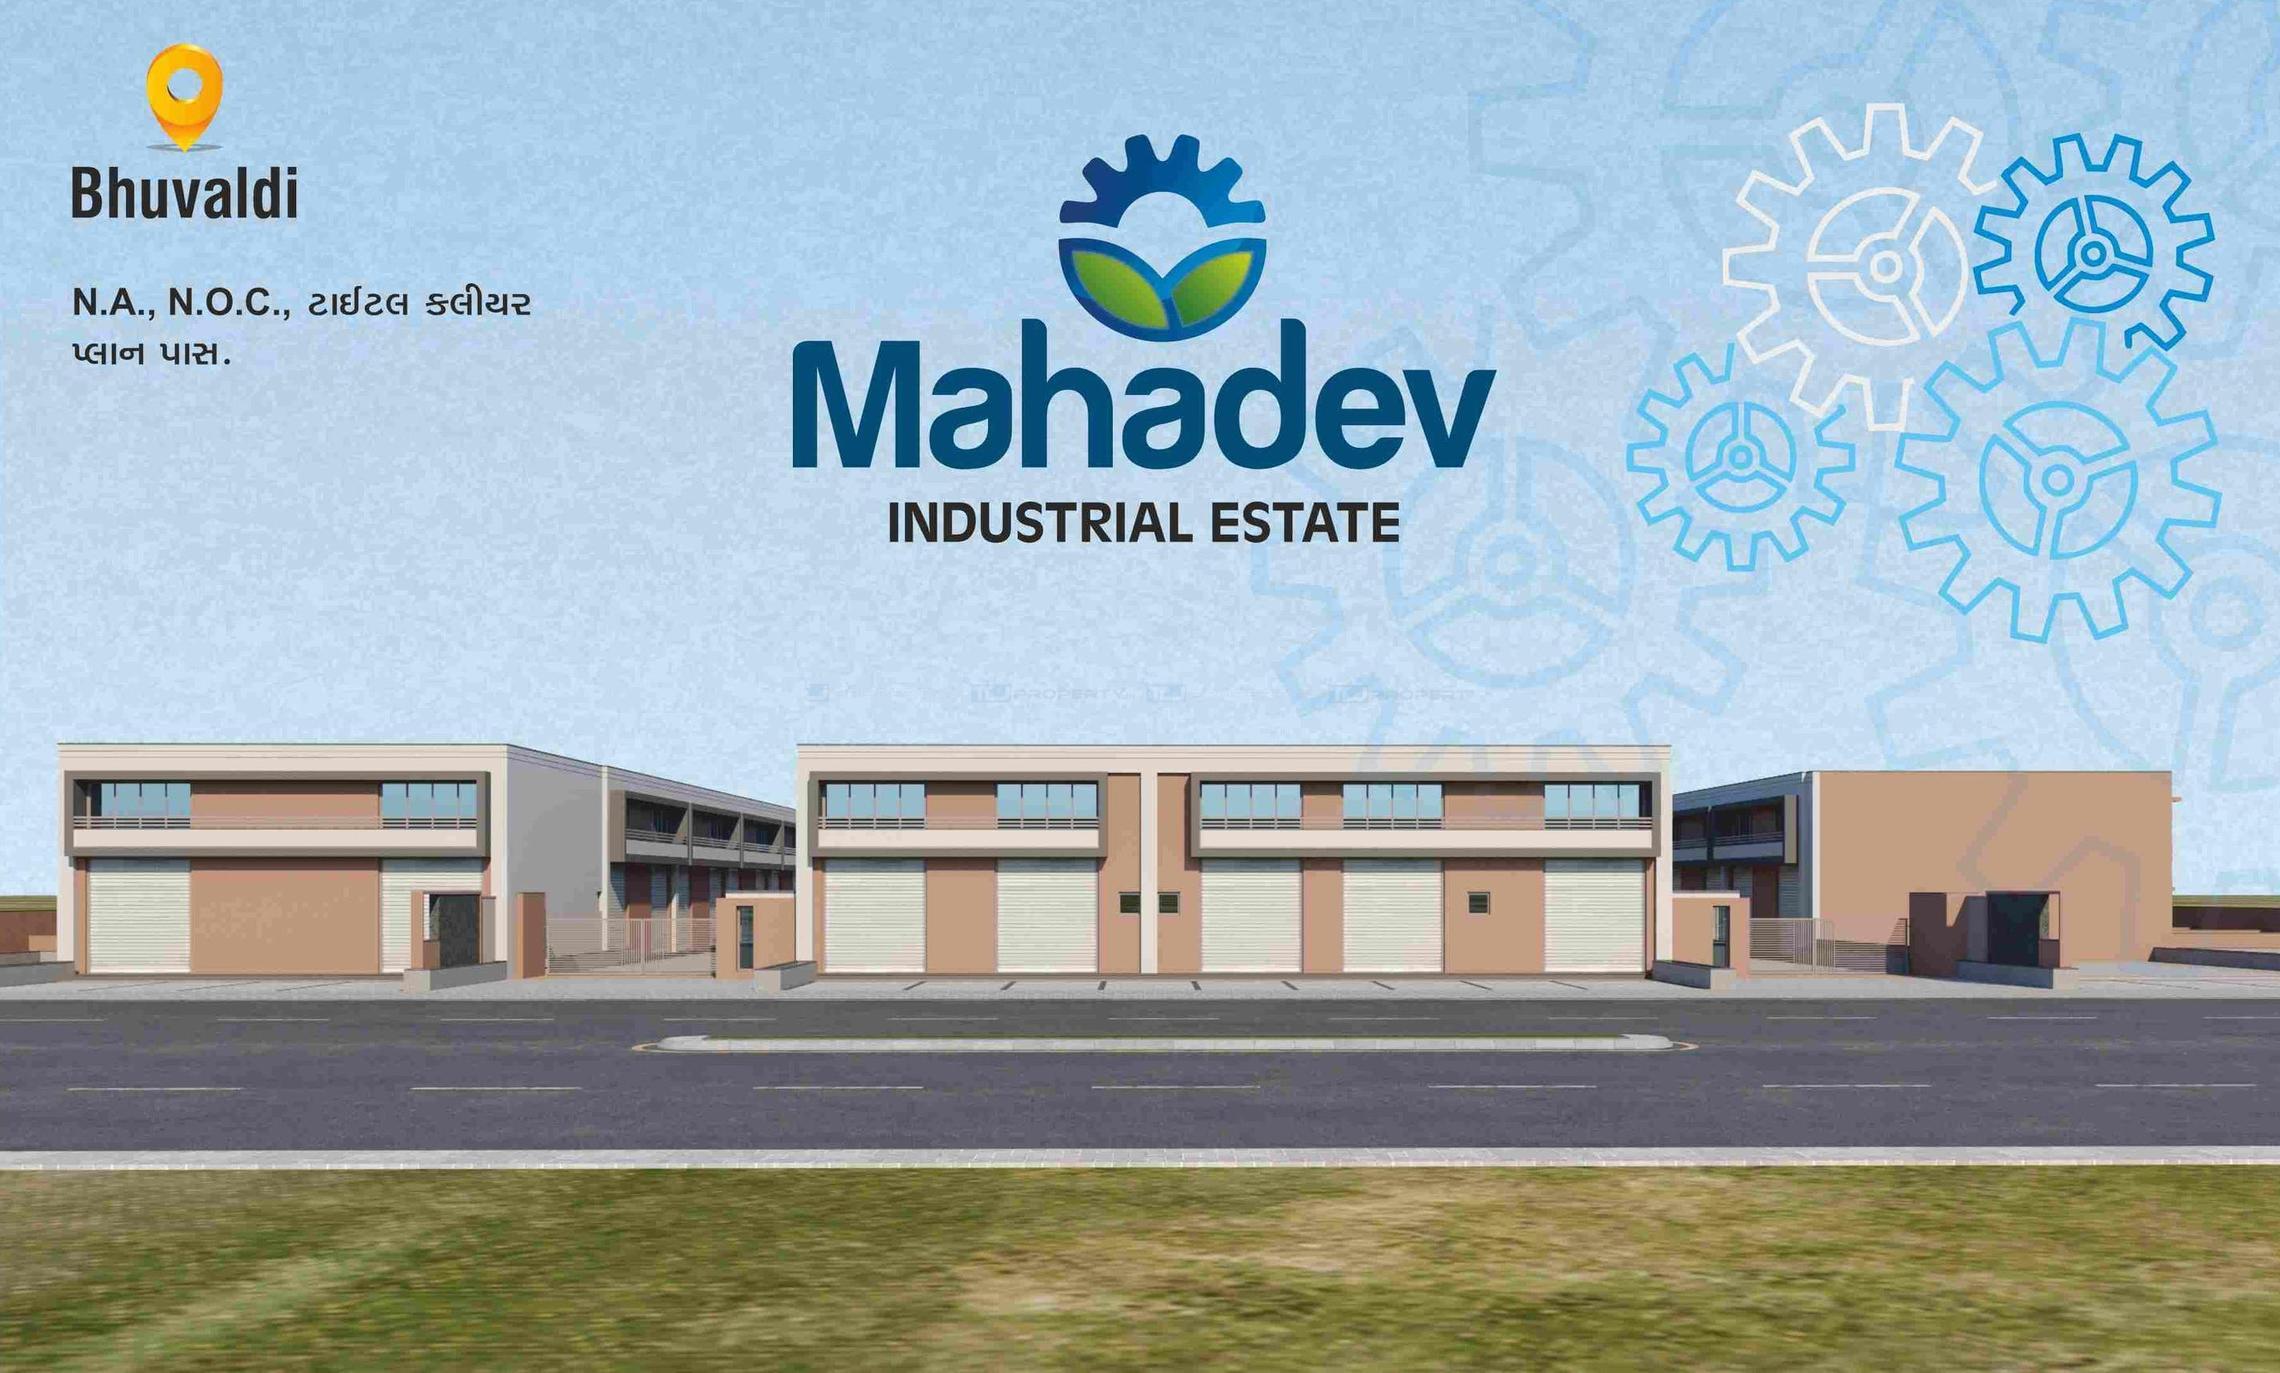 Mahadev Industrial Estate